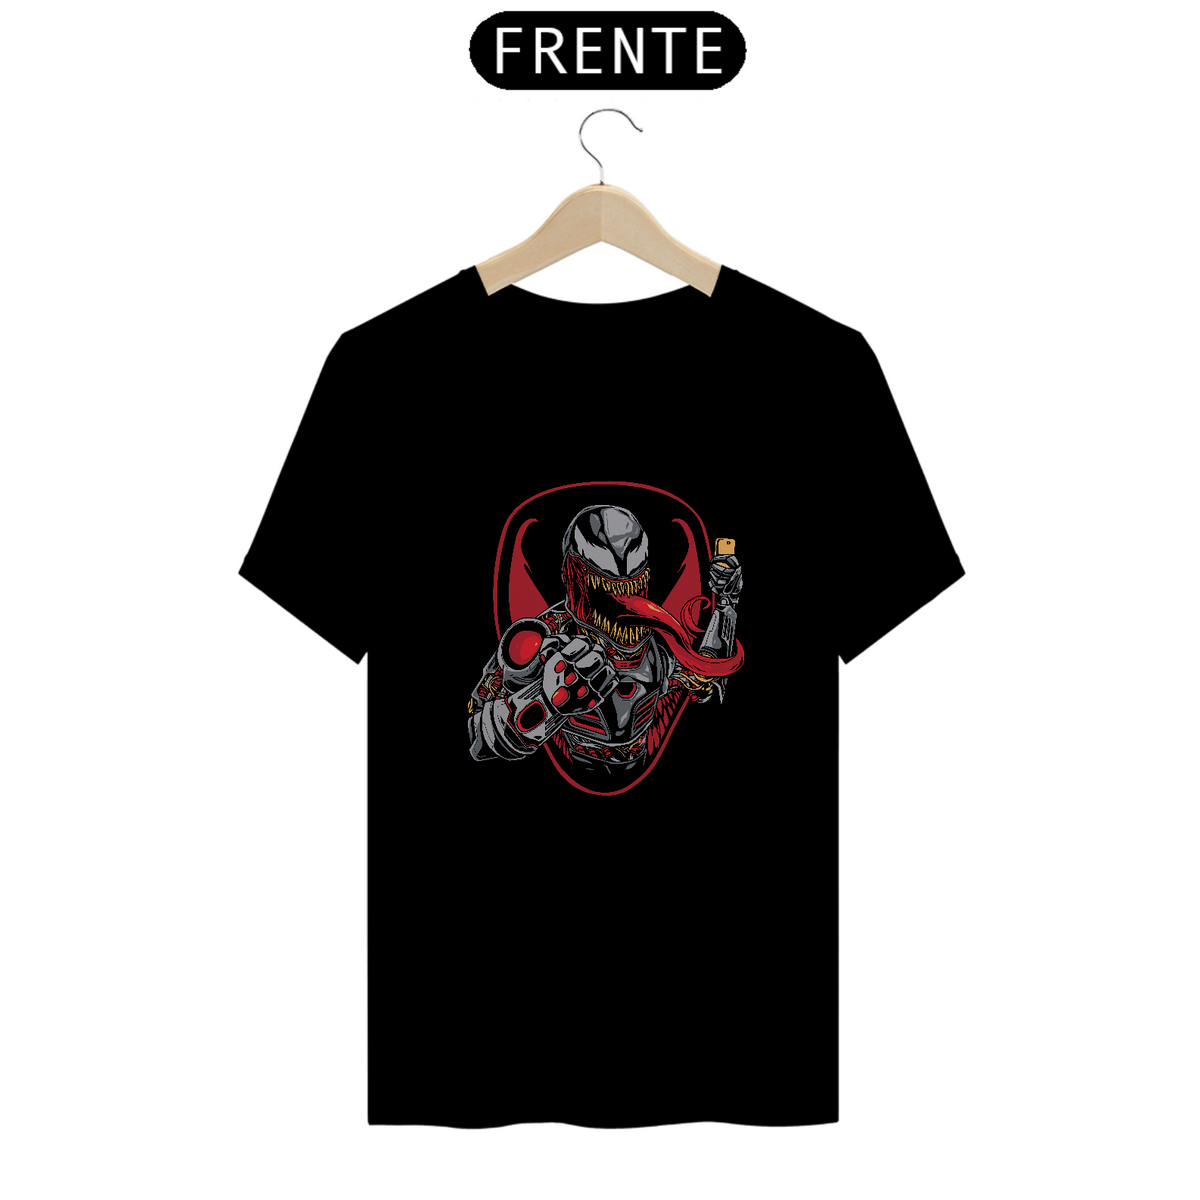 Nome do produto: Camisa Venom II